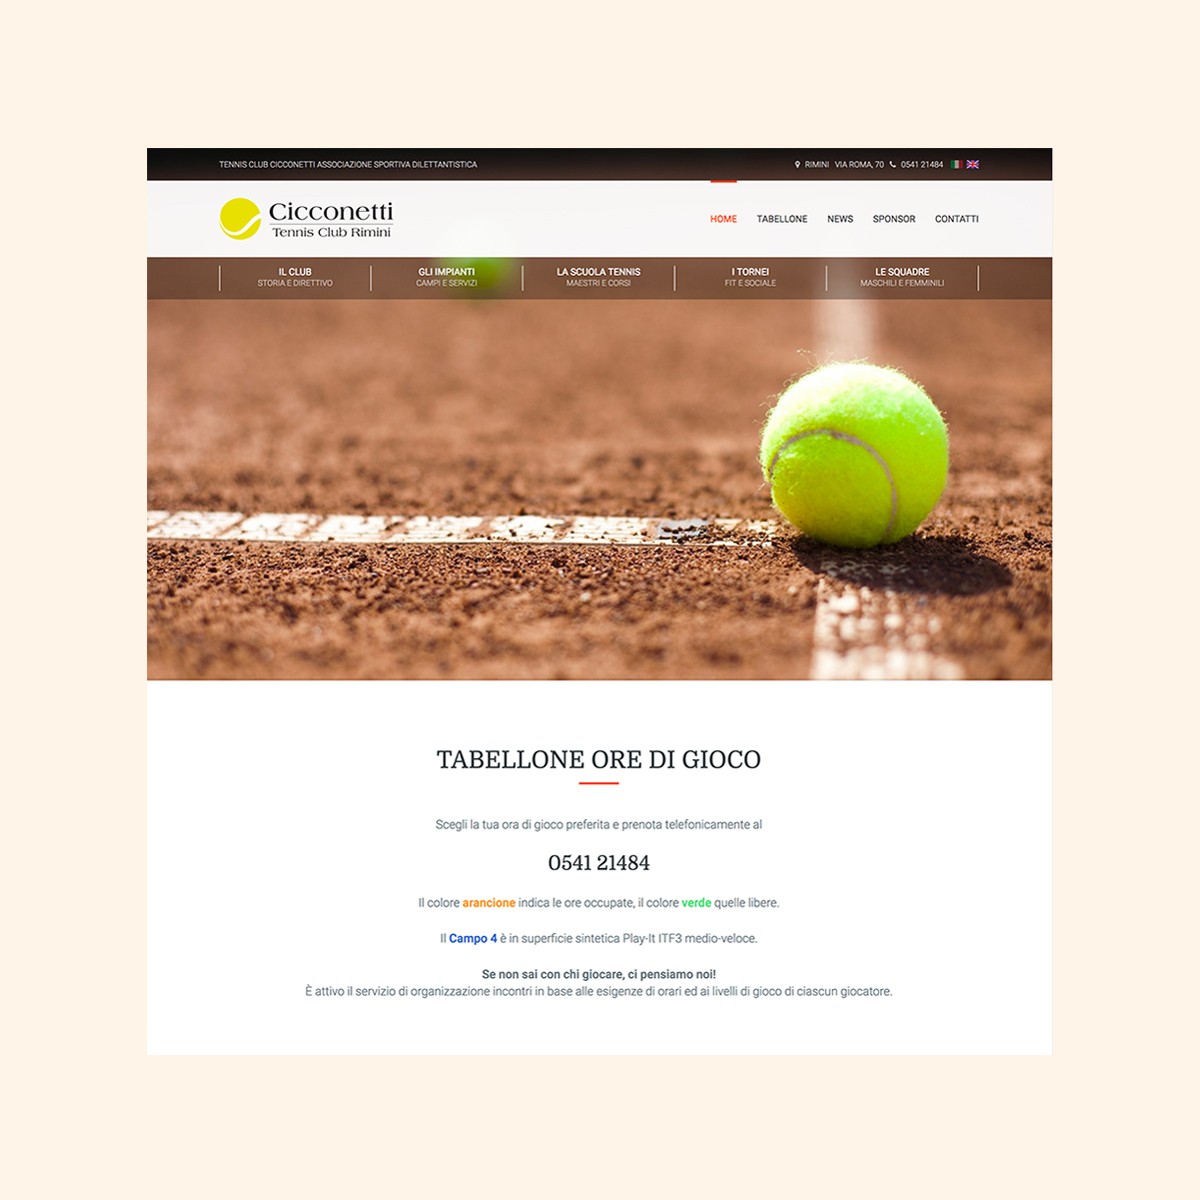 Cicconetti Tennis Club Rimini